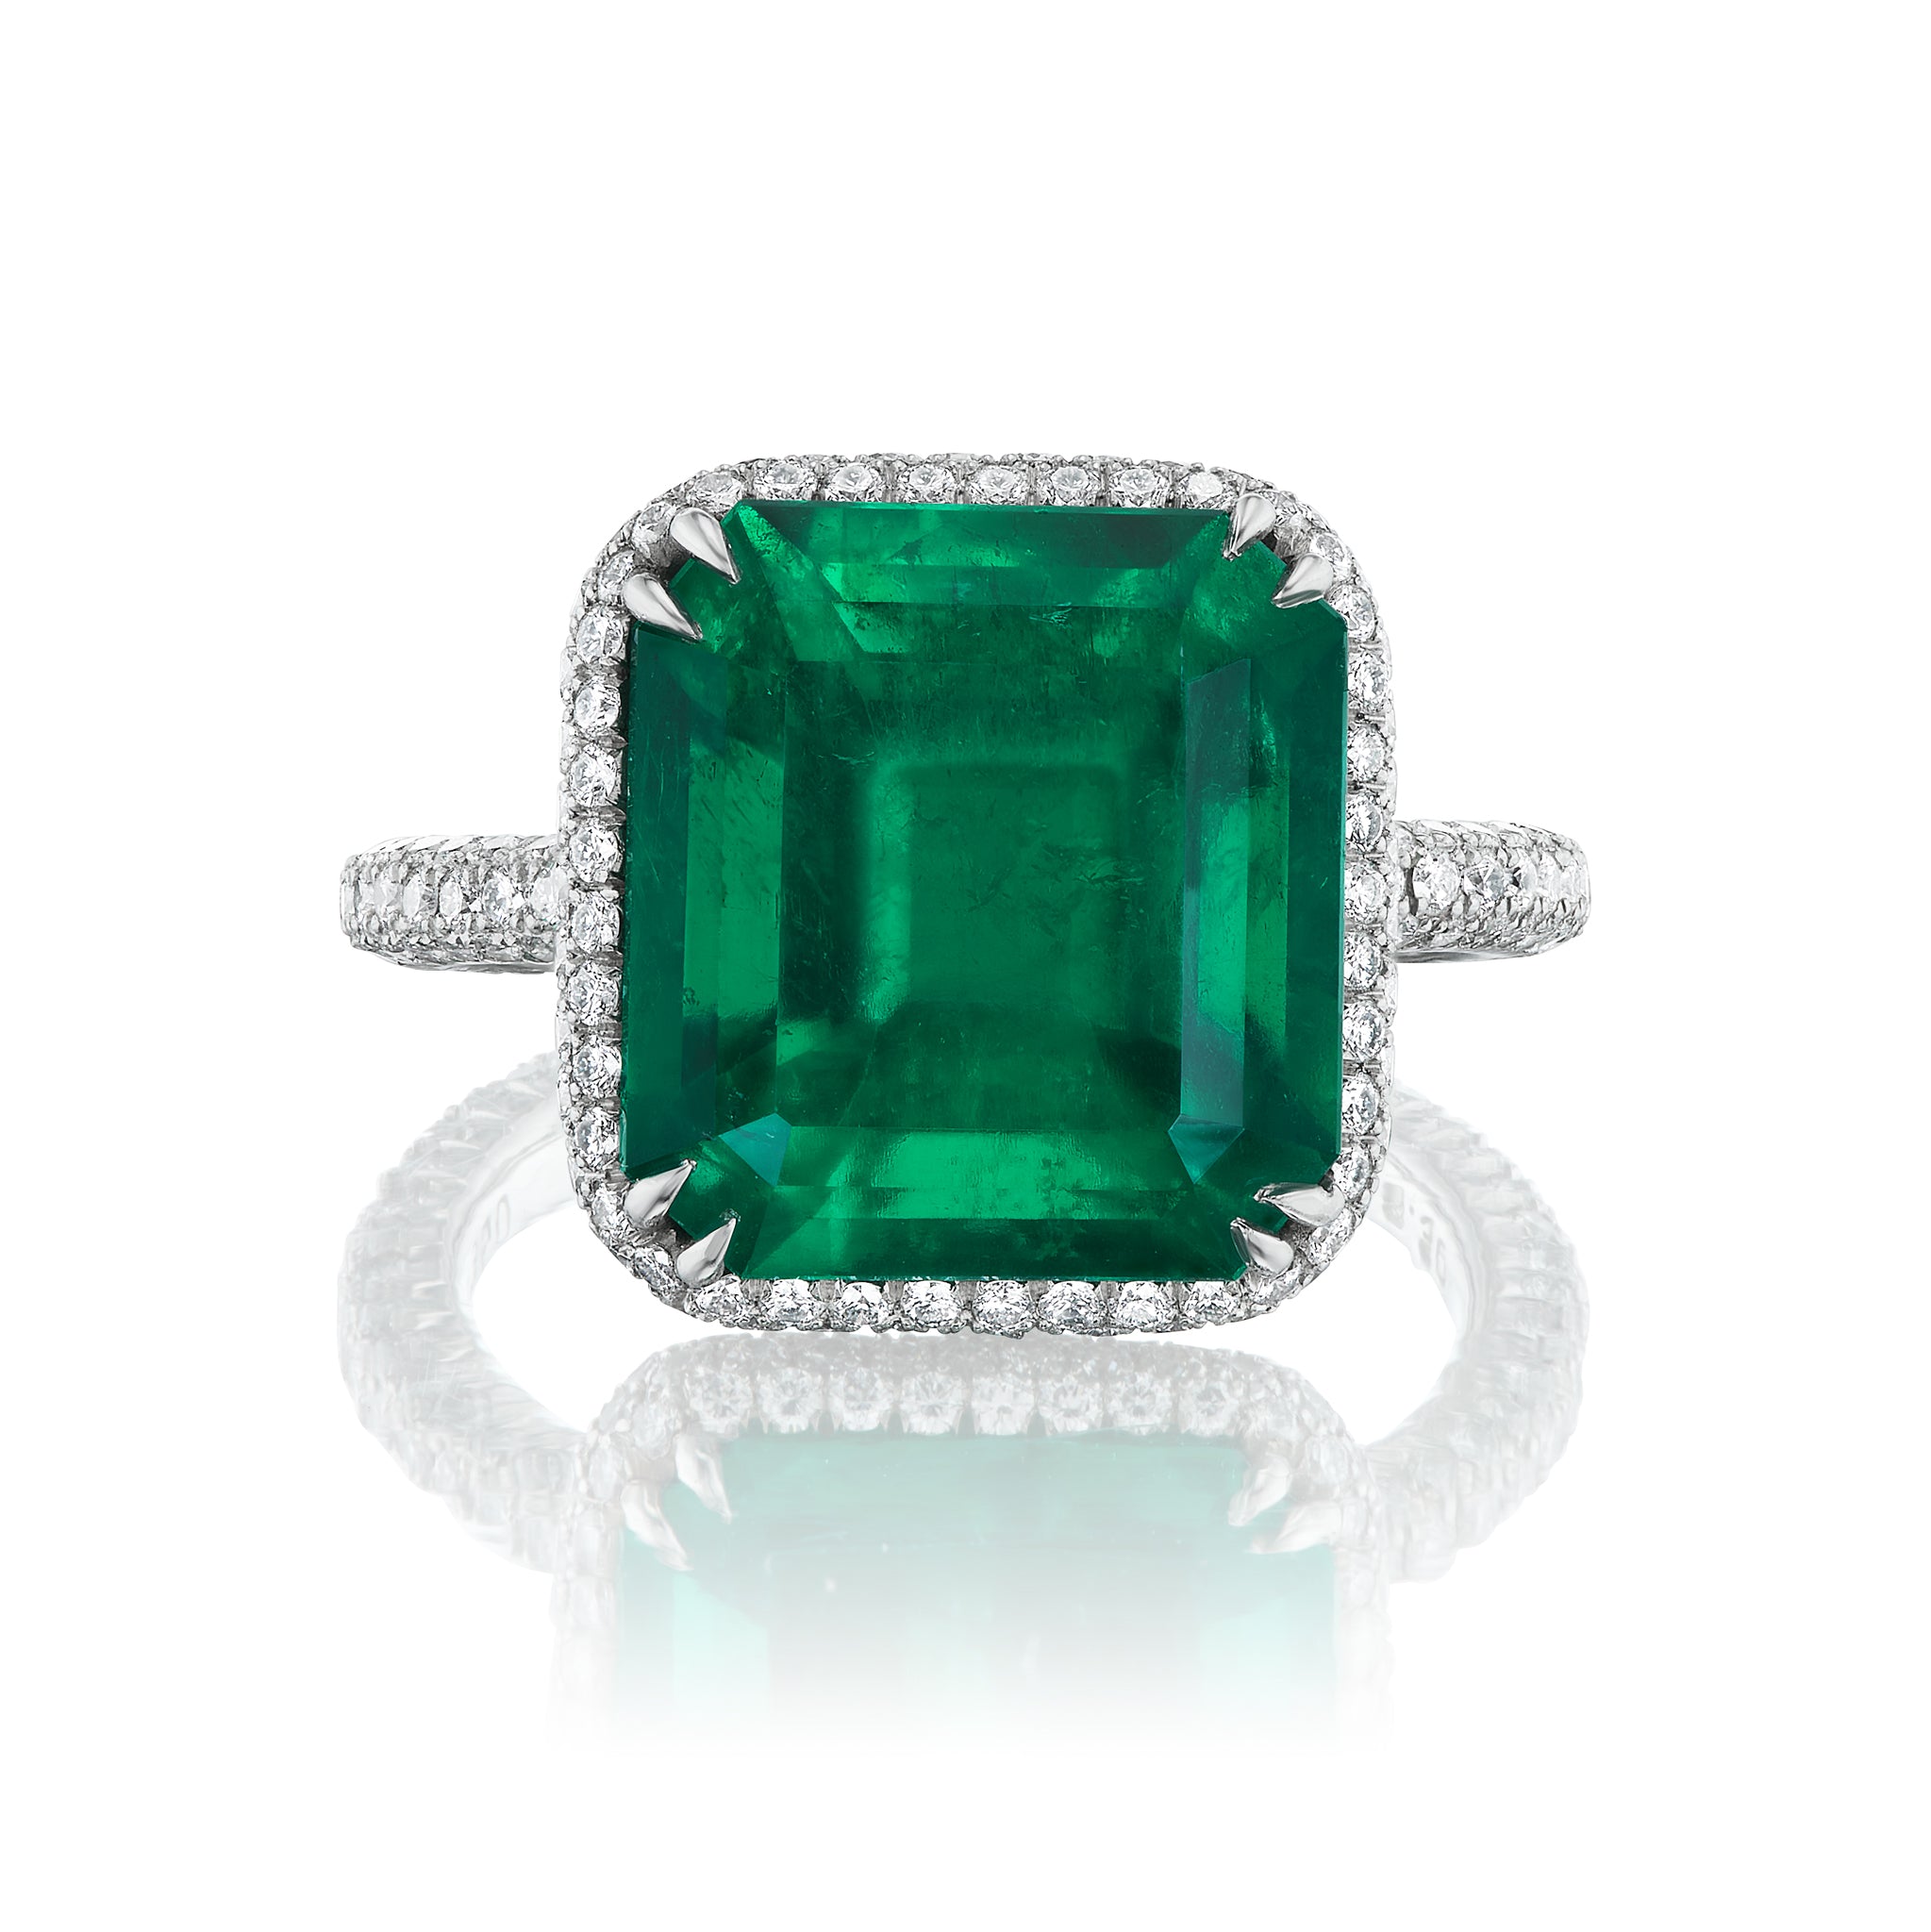 Emerald and Micro Pavé Diamond Ring